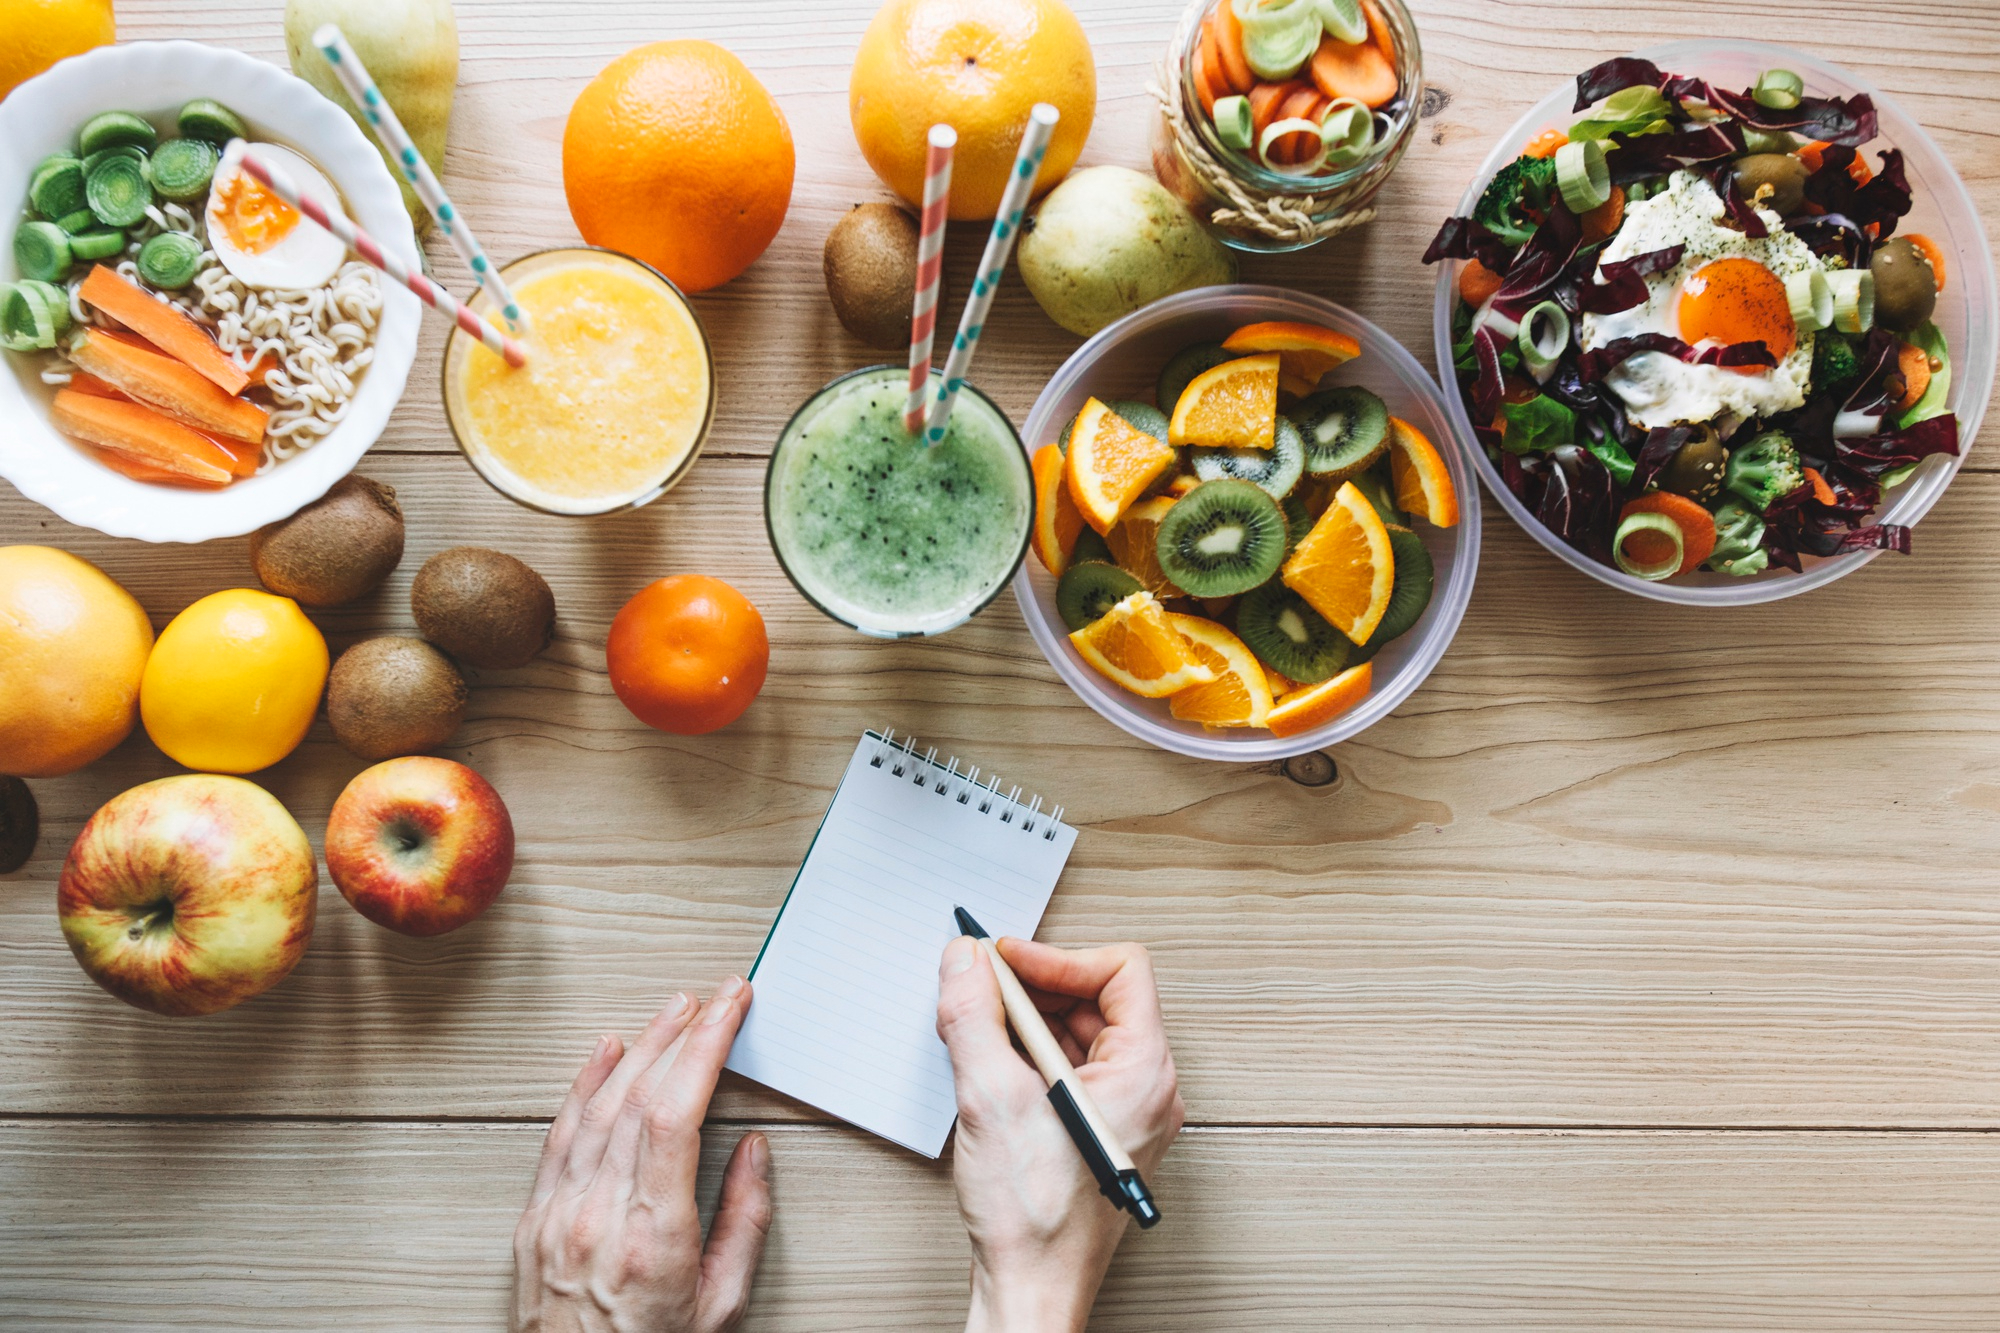 Mesada con alimentos saludables, frutas, verduras, licuados y jugos naturales. Manos de una persona tomando nota sobre consejos de salud.